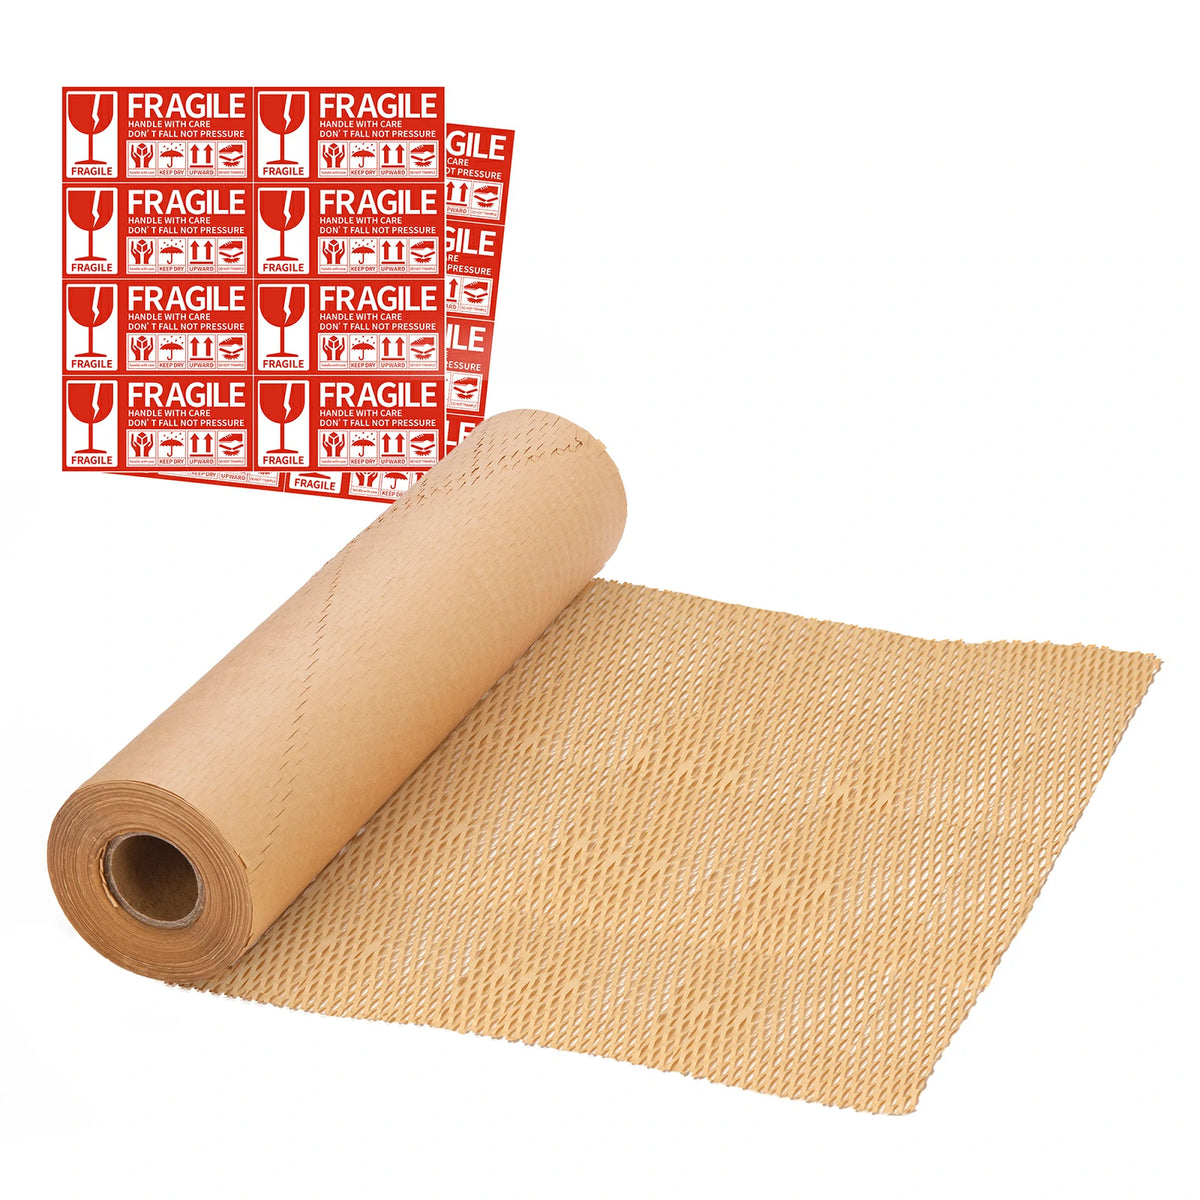 MUNBYN brown honeycomb packaging paper